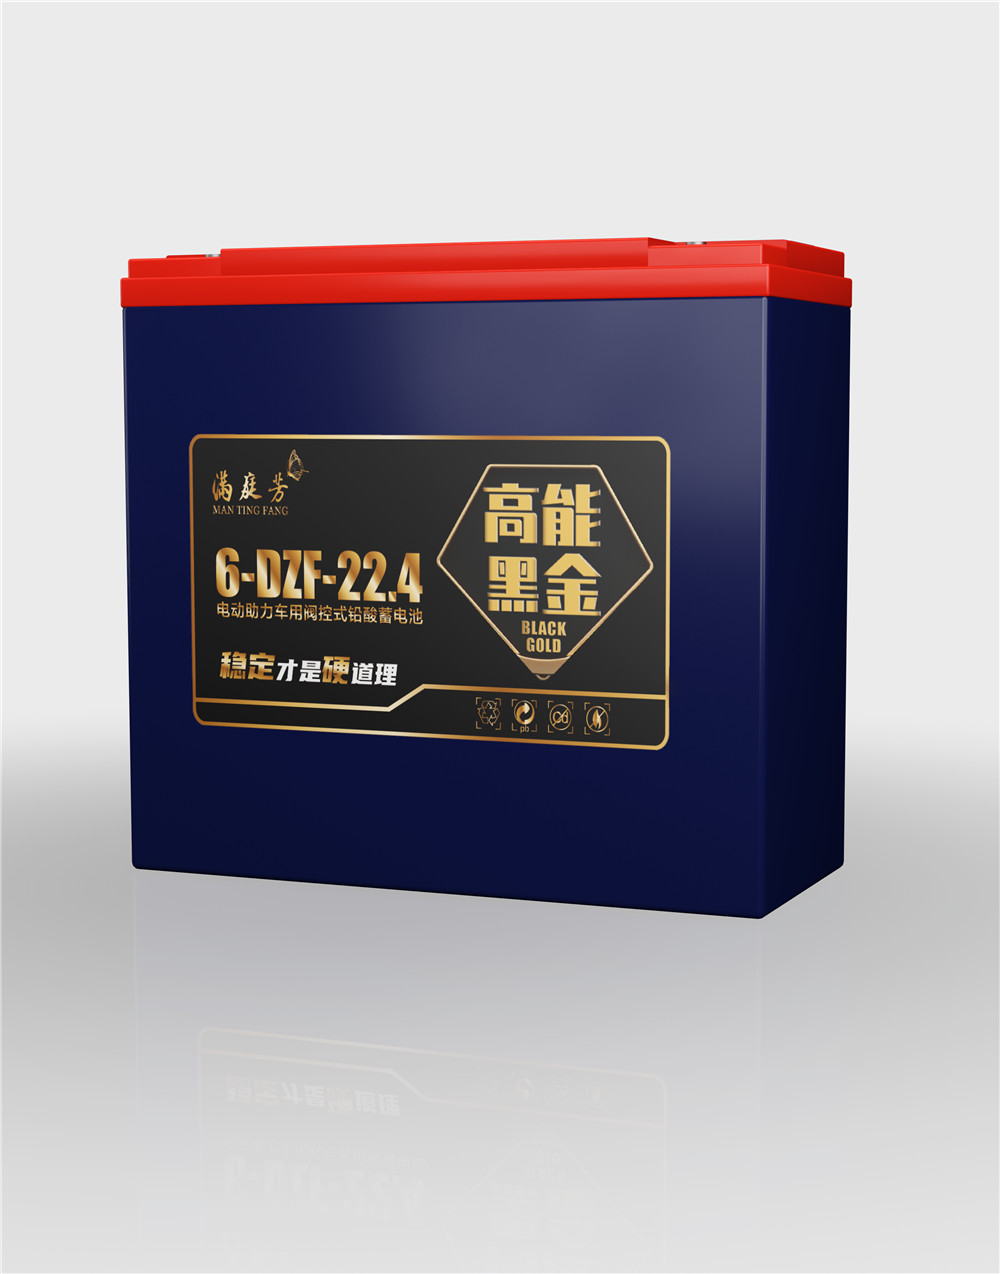 mantingfang black gold series 6-DZF-22.4